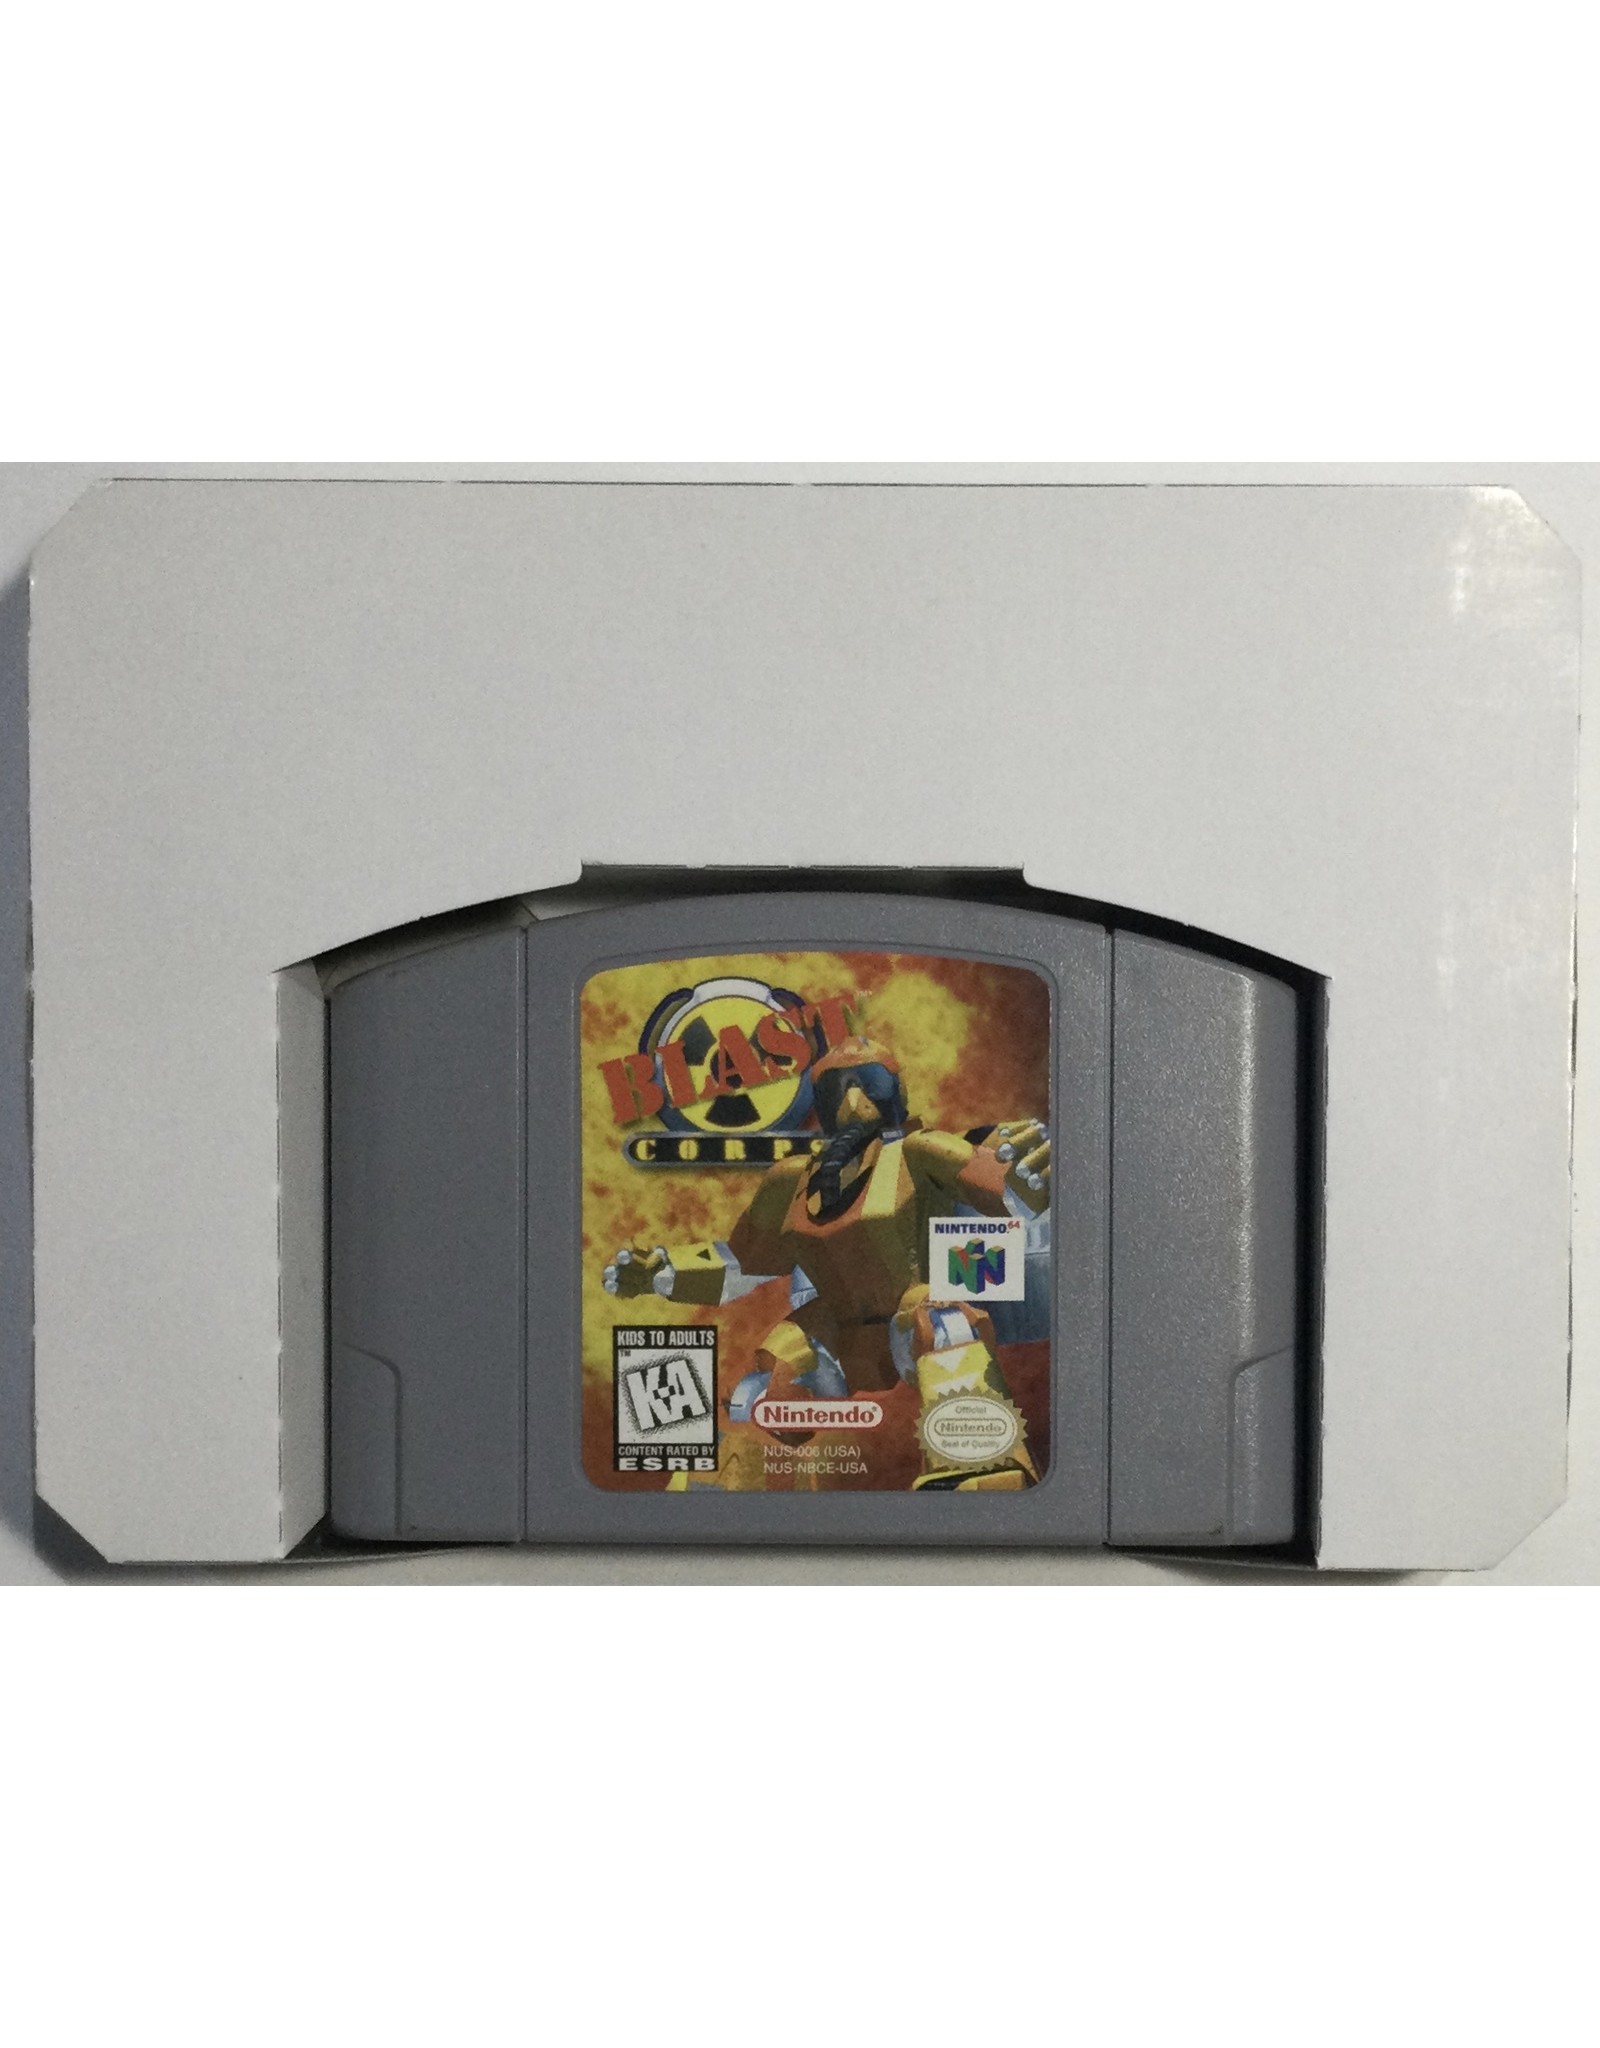 RAREWARE Blast Corps for Nintendo 64 (N64) - CIB